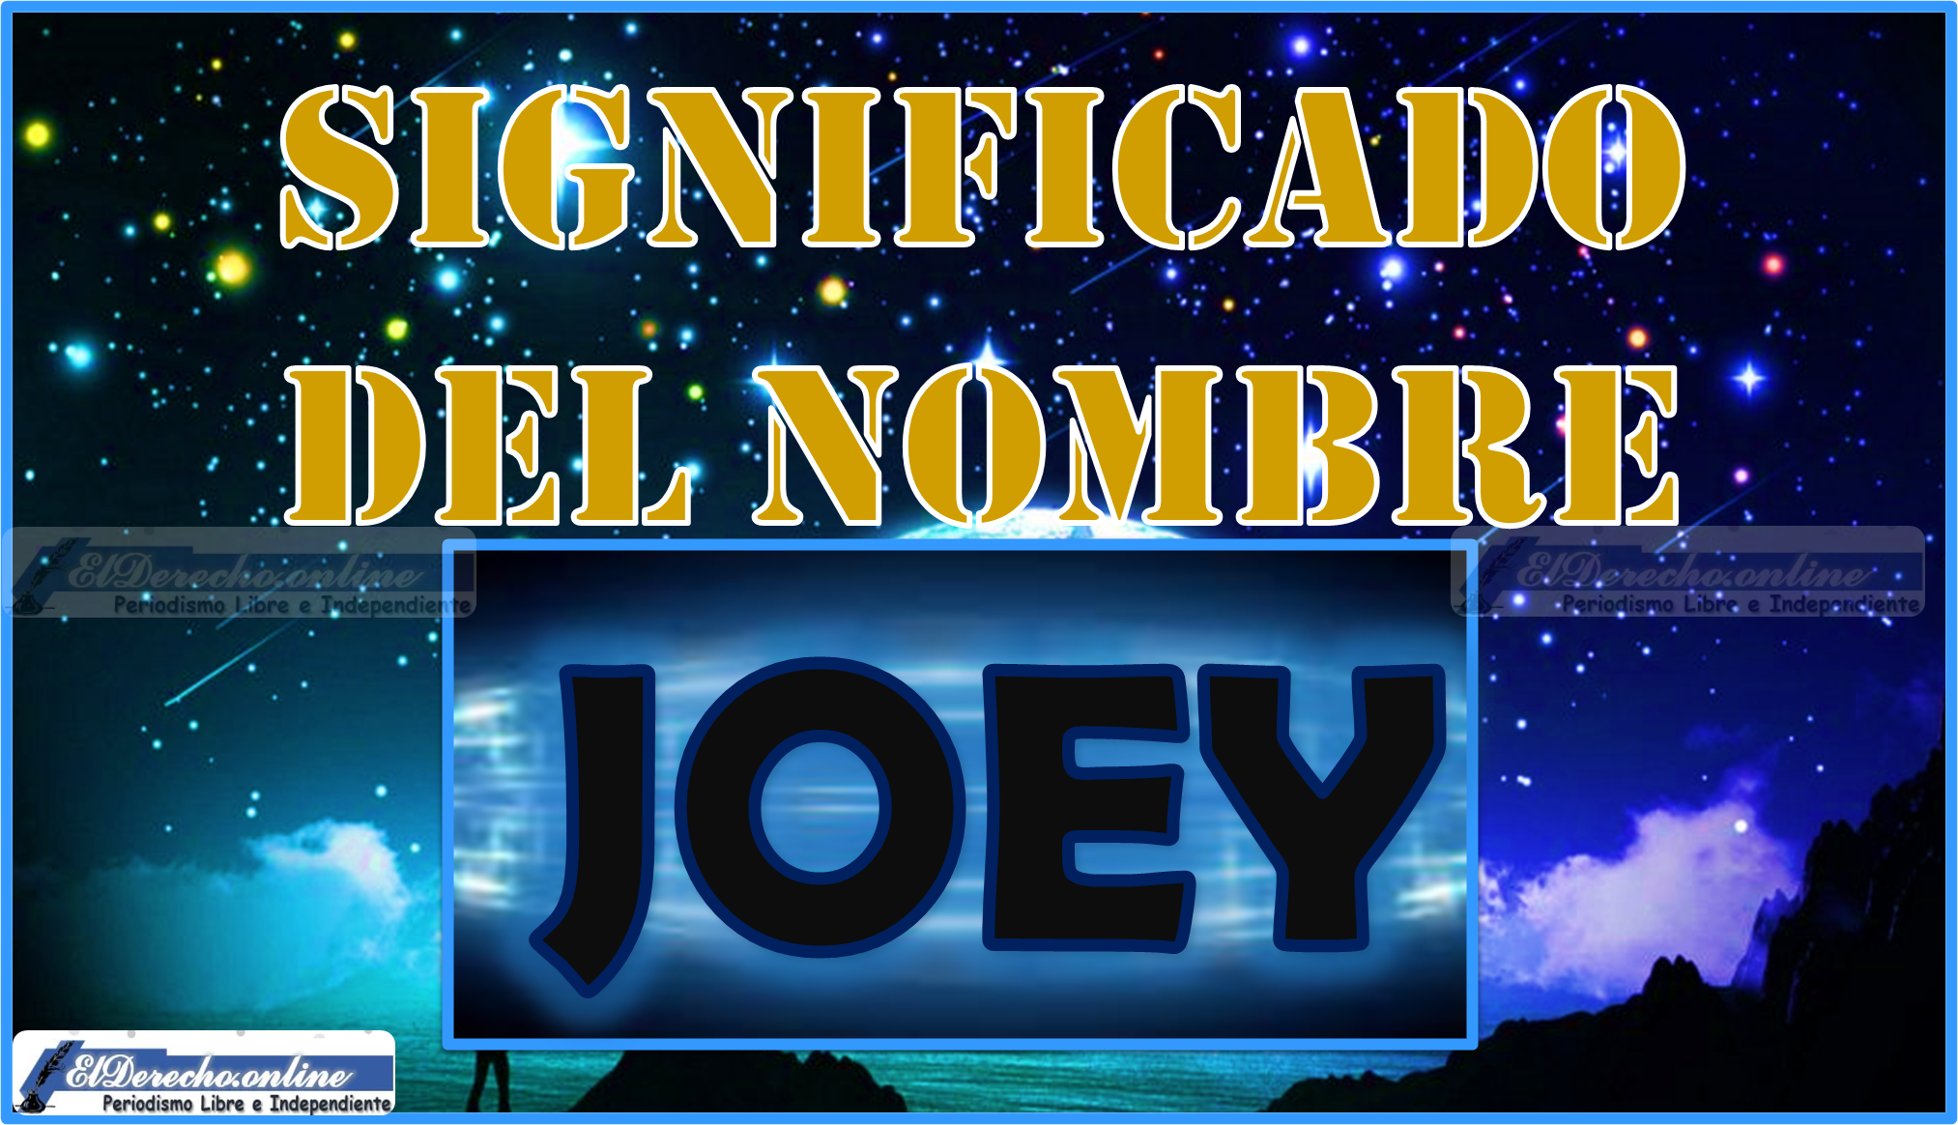 Significado del nombre Joey, su origen y más